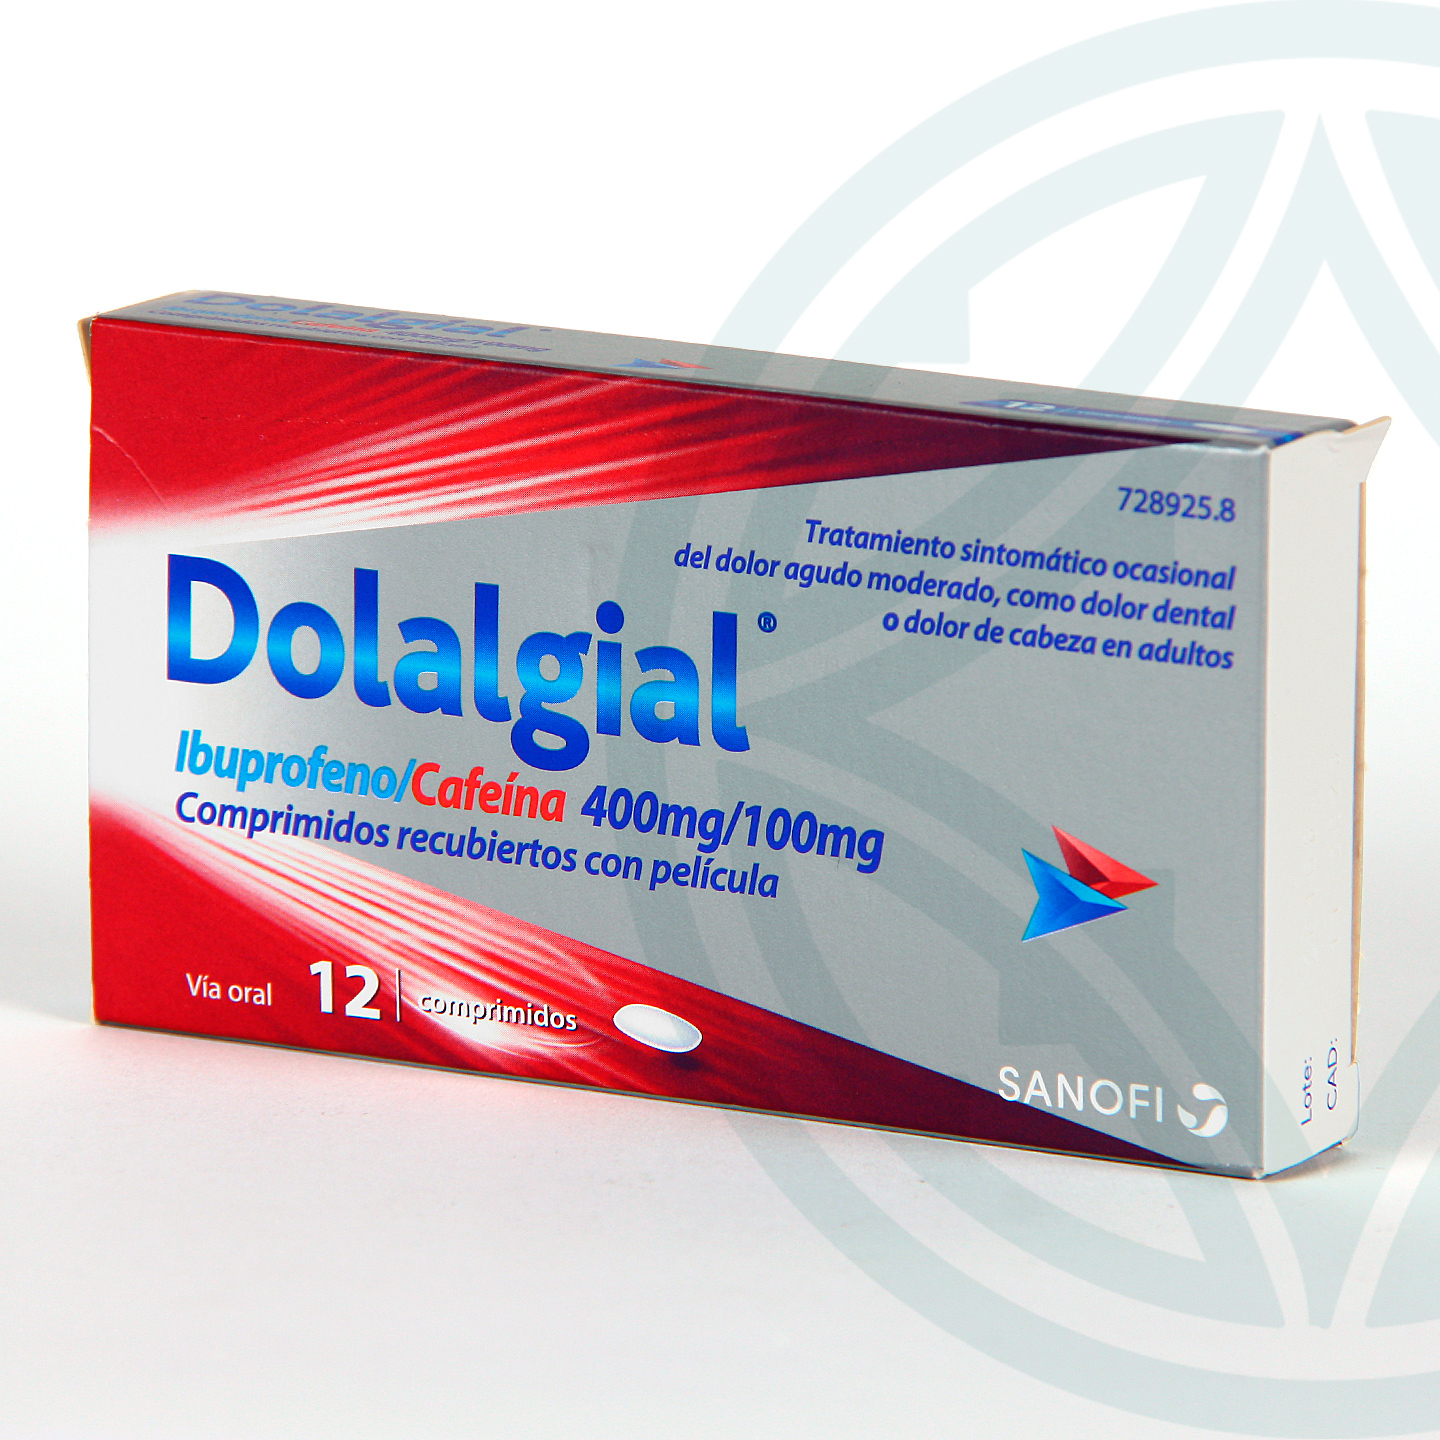 Dolalgial Ibuprofeno Cafeína 12 comprimidos recubiertos | Farmacia Jiménez